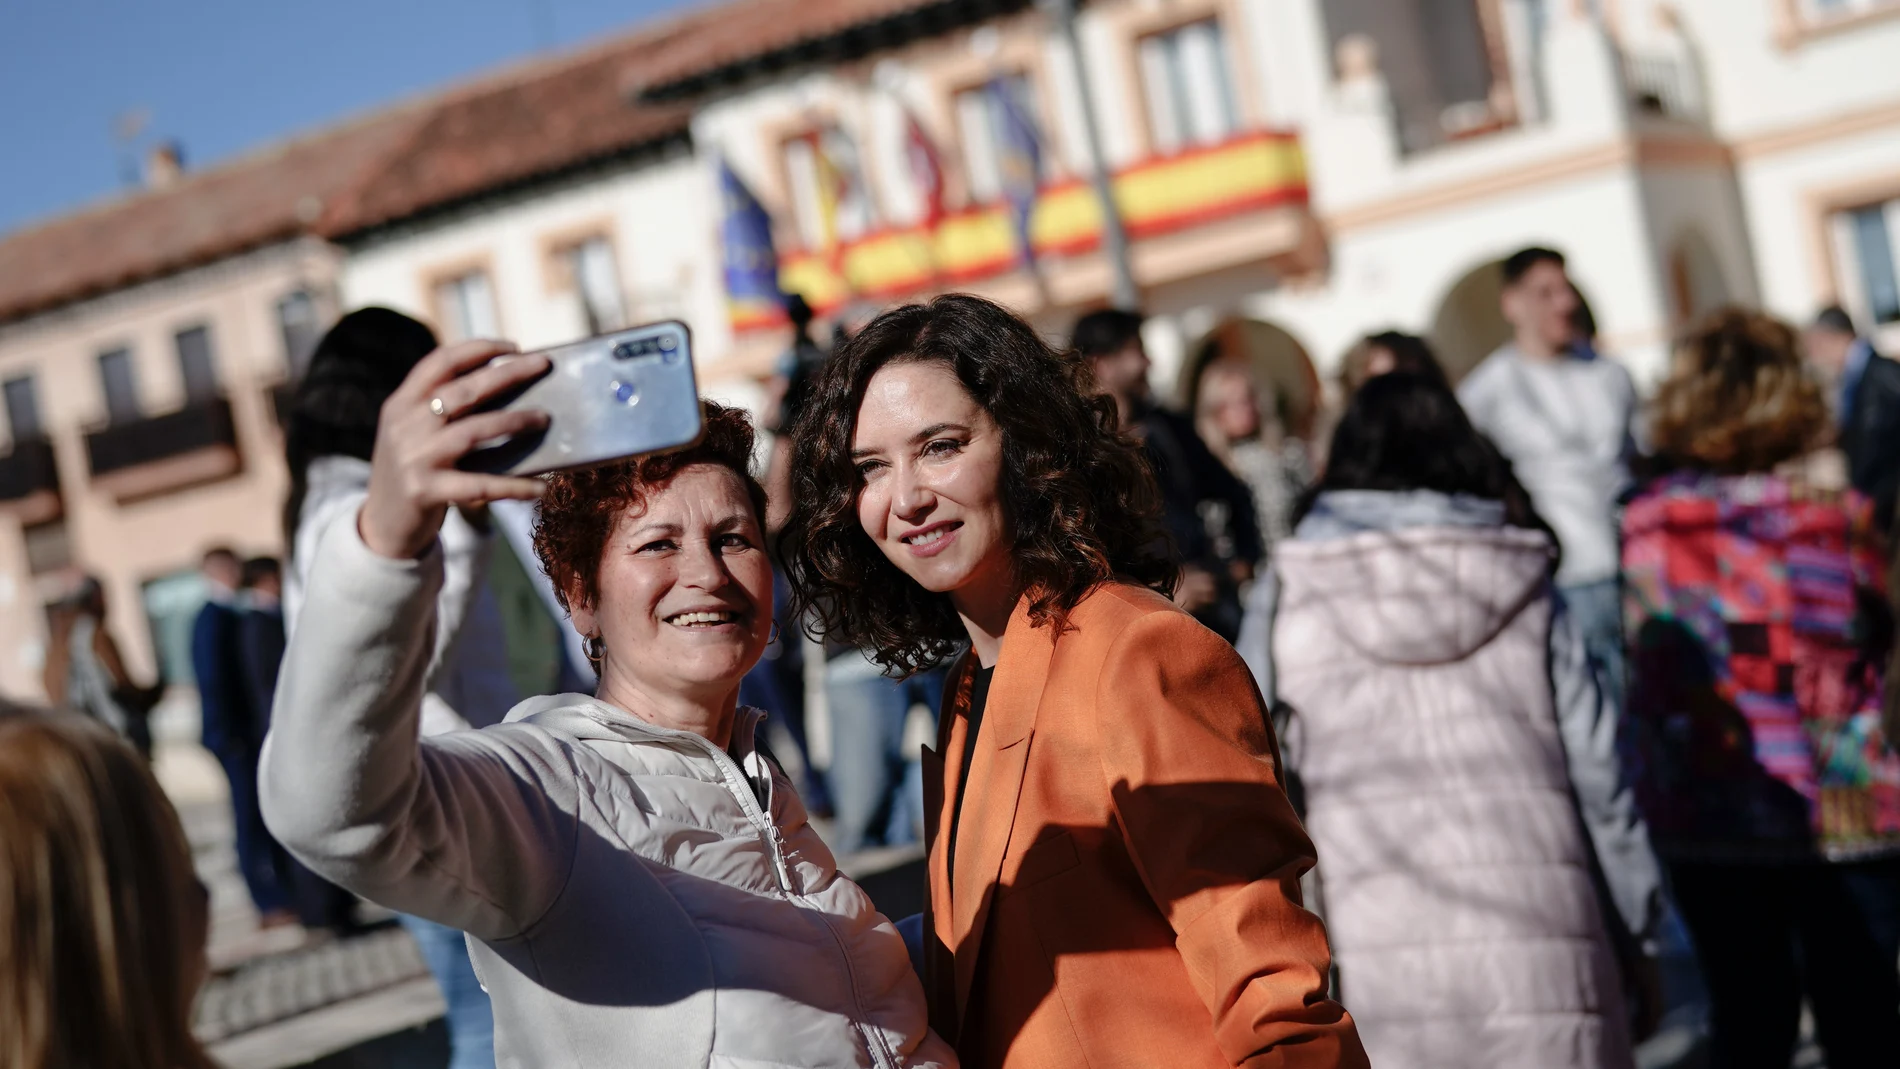 La presidenta de la Comunidad de Madrid, Isabel Díaz Ayuso, se fotografía con una persona este miércoles en Griñón, donde preside la reunión del Consejo de Gobierno, que de forma extraordinaria se celebra en el Centro de Recursos Juveniles de Griñón.-